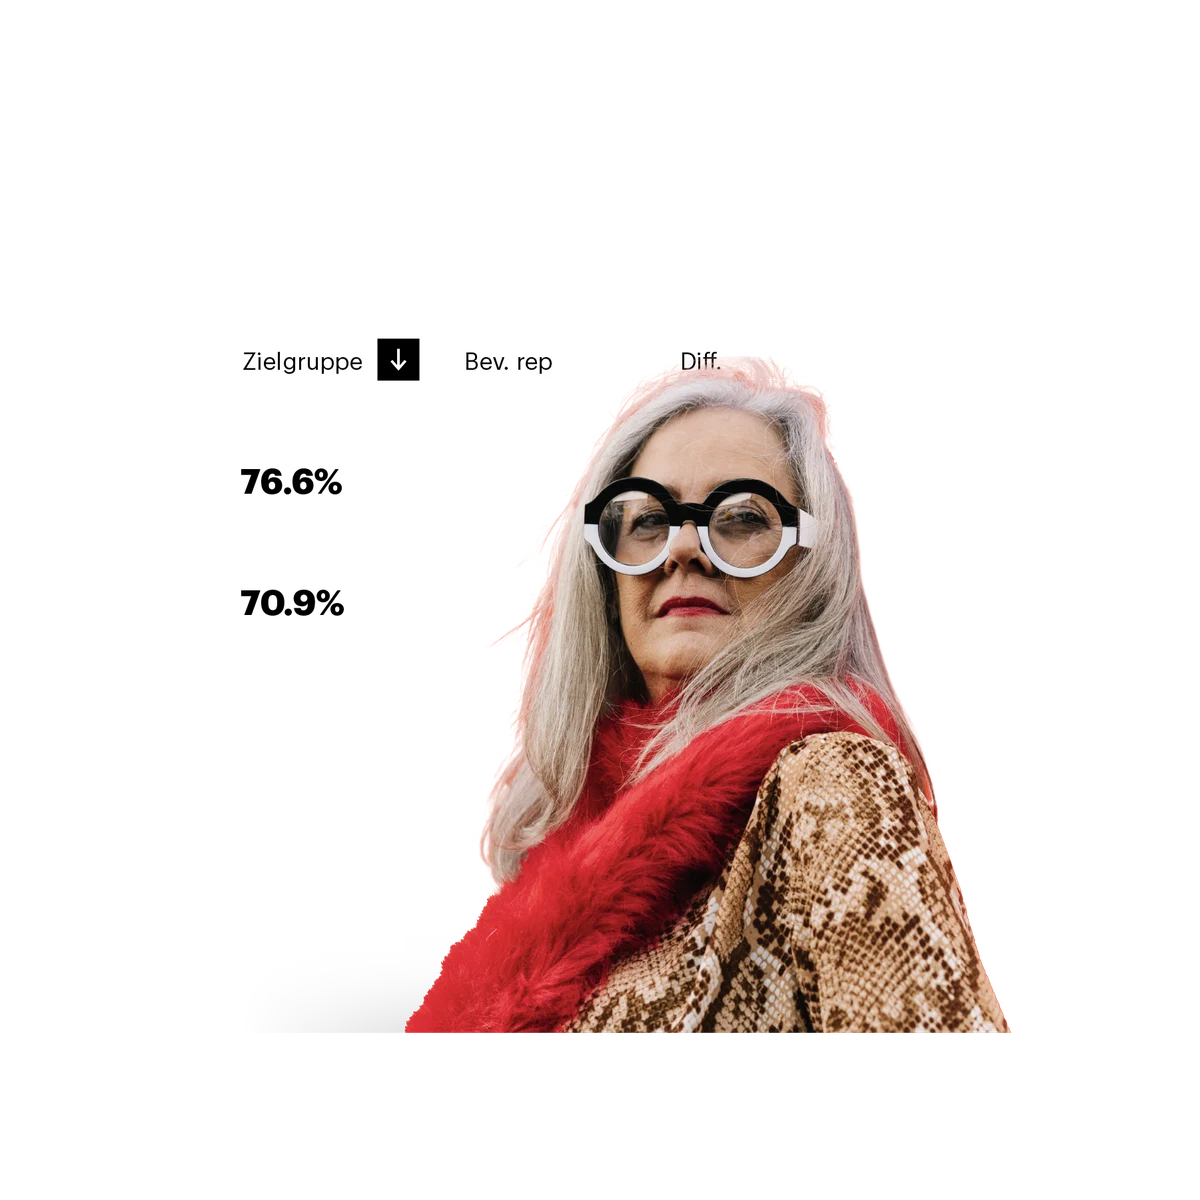 Frau mit Brille, rotem Schal und Daten zu Einstellung zu Werbung im Hintergrund